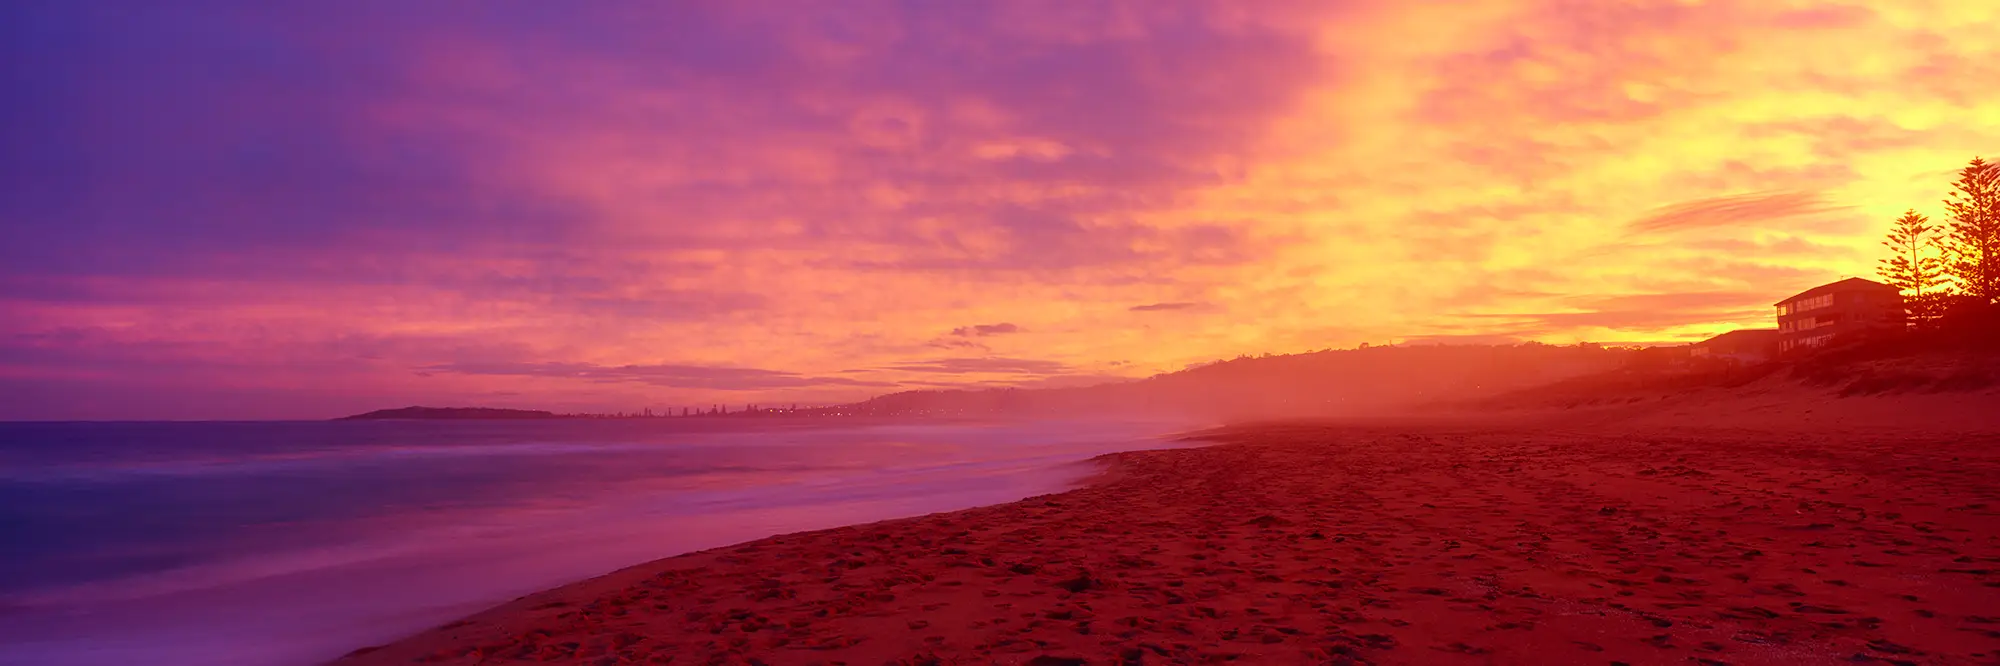 Magical Narrabeen Beach Sunset Photo